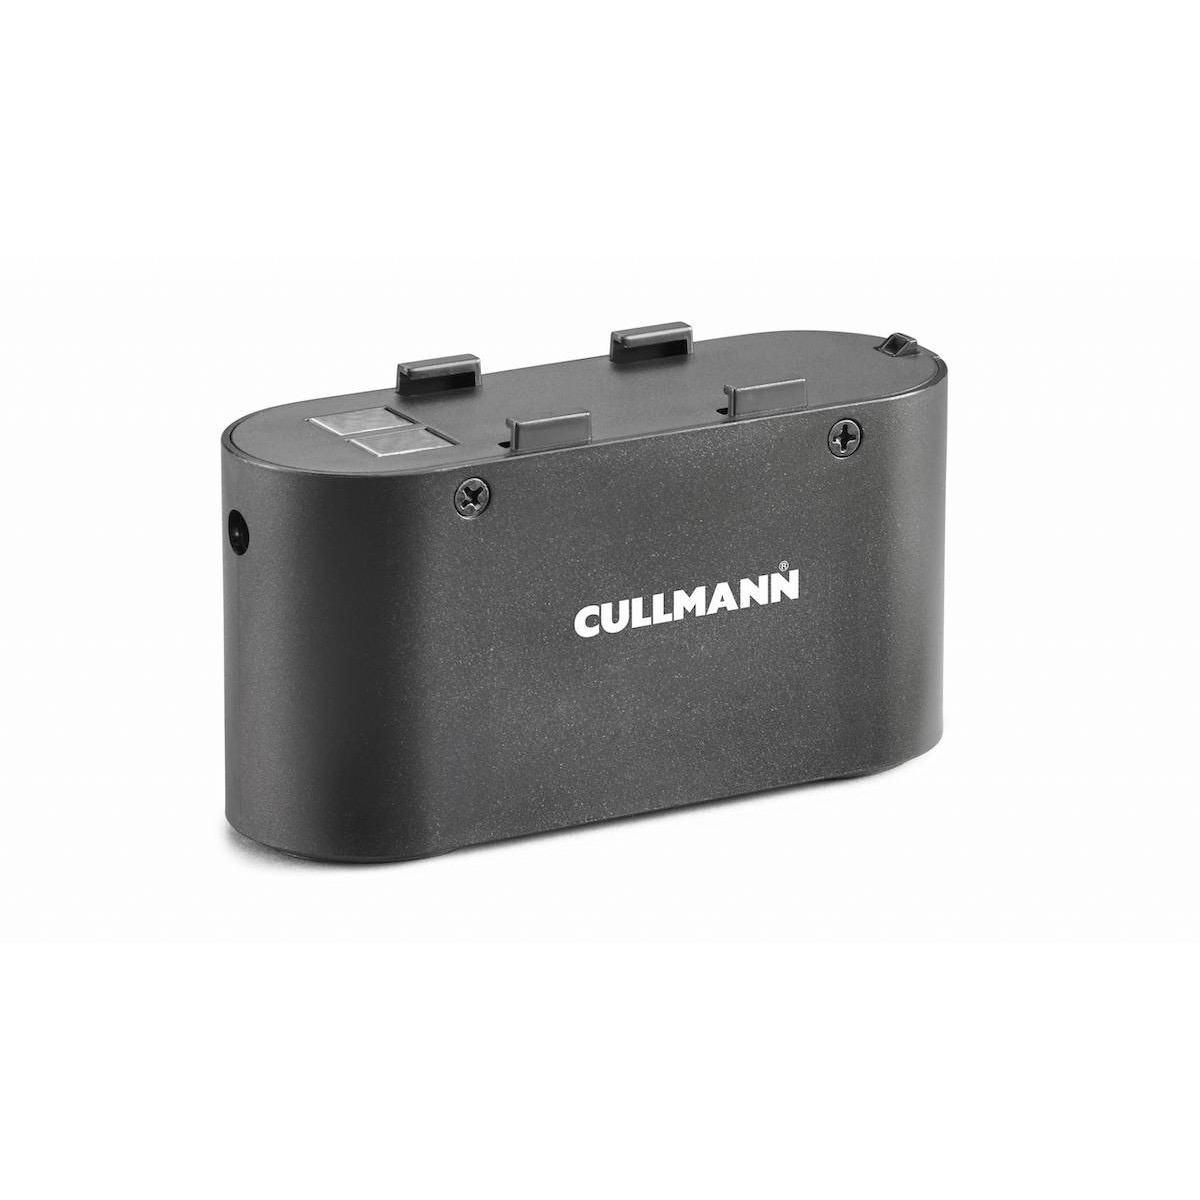 Cullmann PP 4500 Power Pack